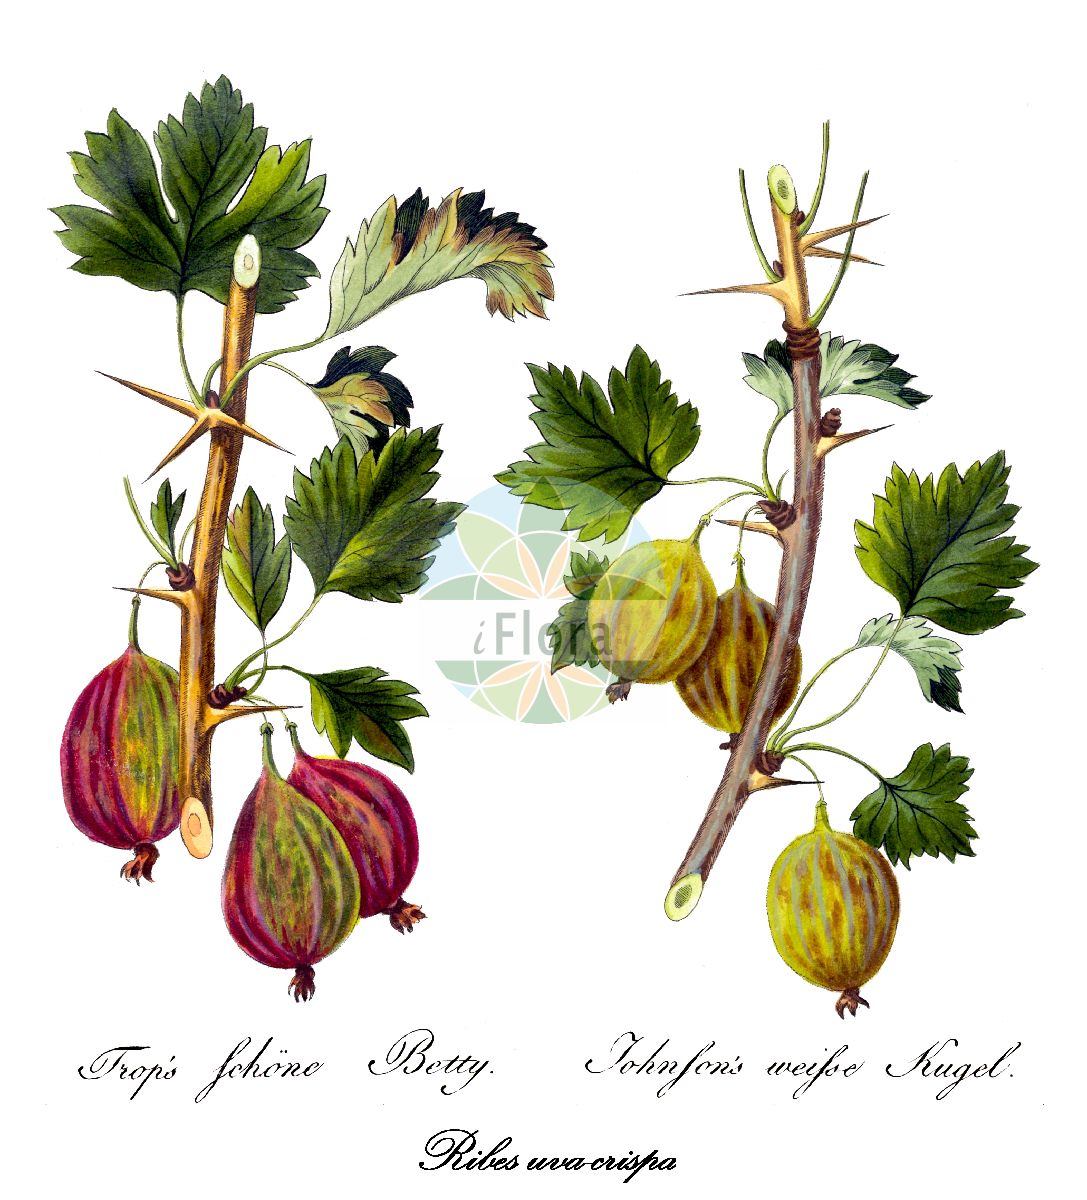 Historische Abbildung von Ribes uva-crispa (Stachelbeere - gooseberry). Das Bild zeigt Blatt, Bluete, Frucht und Same. ---- Historical Drawing of Ribes uva-crispa (Stachelbeere - gooseberry). The image is showing leaf, flower, fruit and seed.(Ribes uva-crispa,Stachelbeere,gooseberry,Grossularia reclinata,Ribes grossularia,Ribes reclinatum,Druesenborstige Stachelbeere,Kurzhaarige Stachelbeere,Zurueckgebogene Stachelbeere,European Gooseberry,Ogrose,Ribes,Johannisbeere,Currant,Grossulariaceae,Stachelbeergewächse,Currant family,Blatt,Bluete,Frucht,Same,leaf,flower,fruit,seed,Allgemeines teutsches Garten-Magazin (1804-1811))